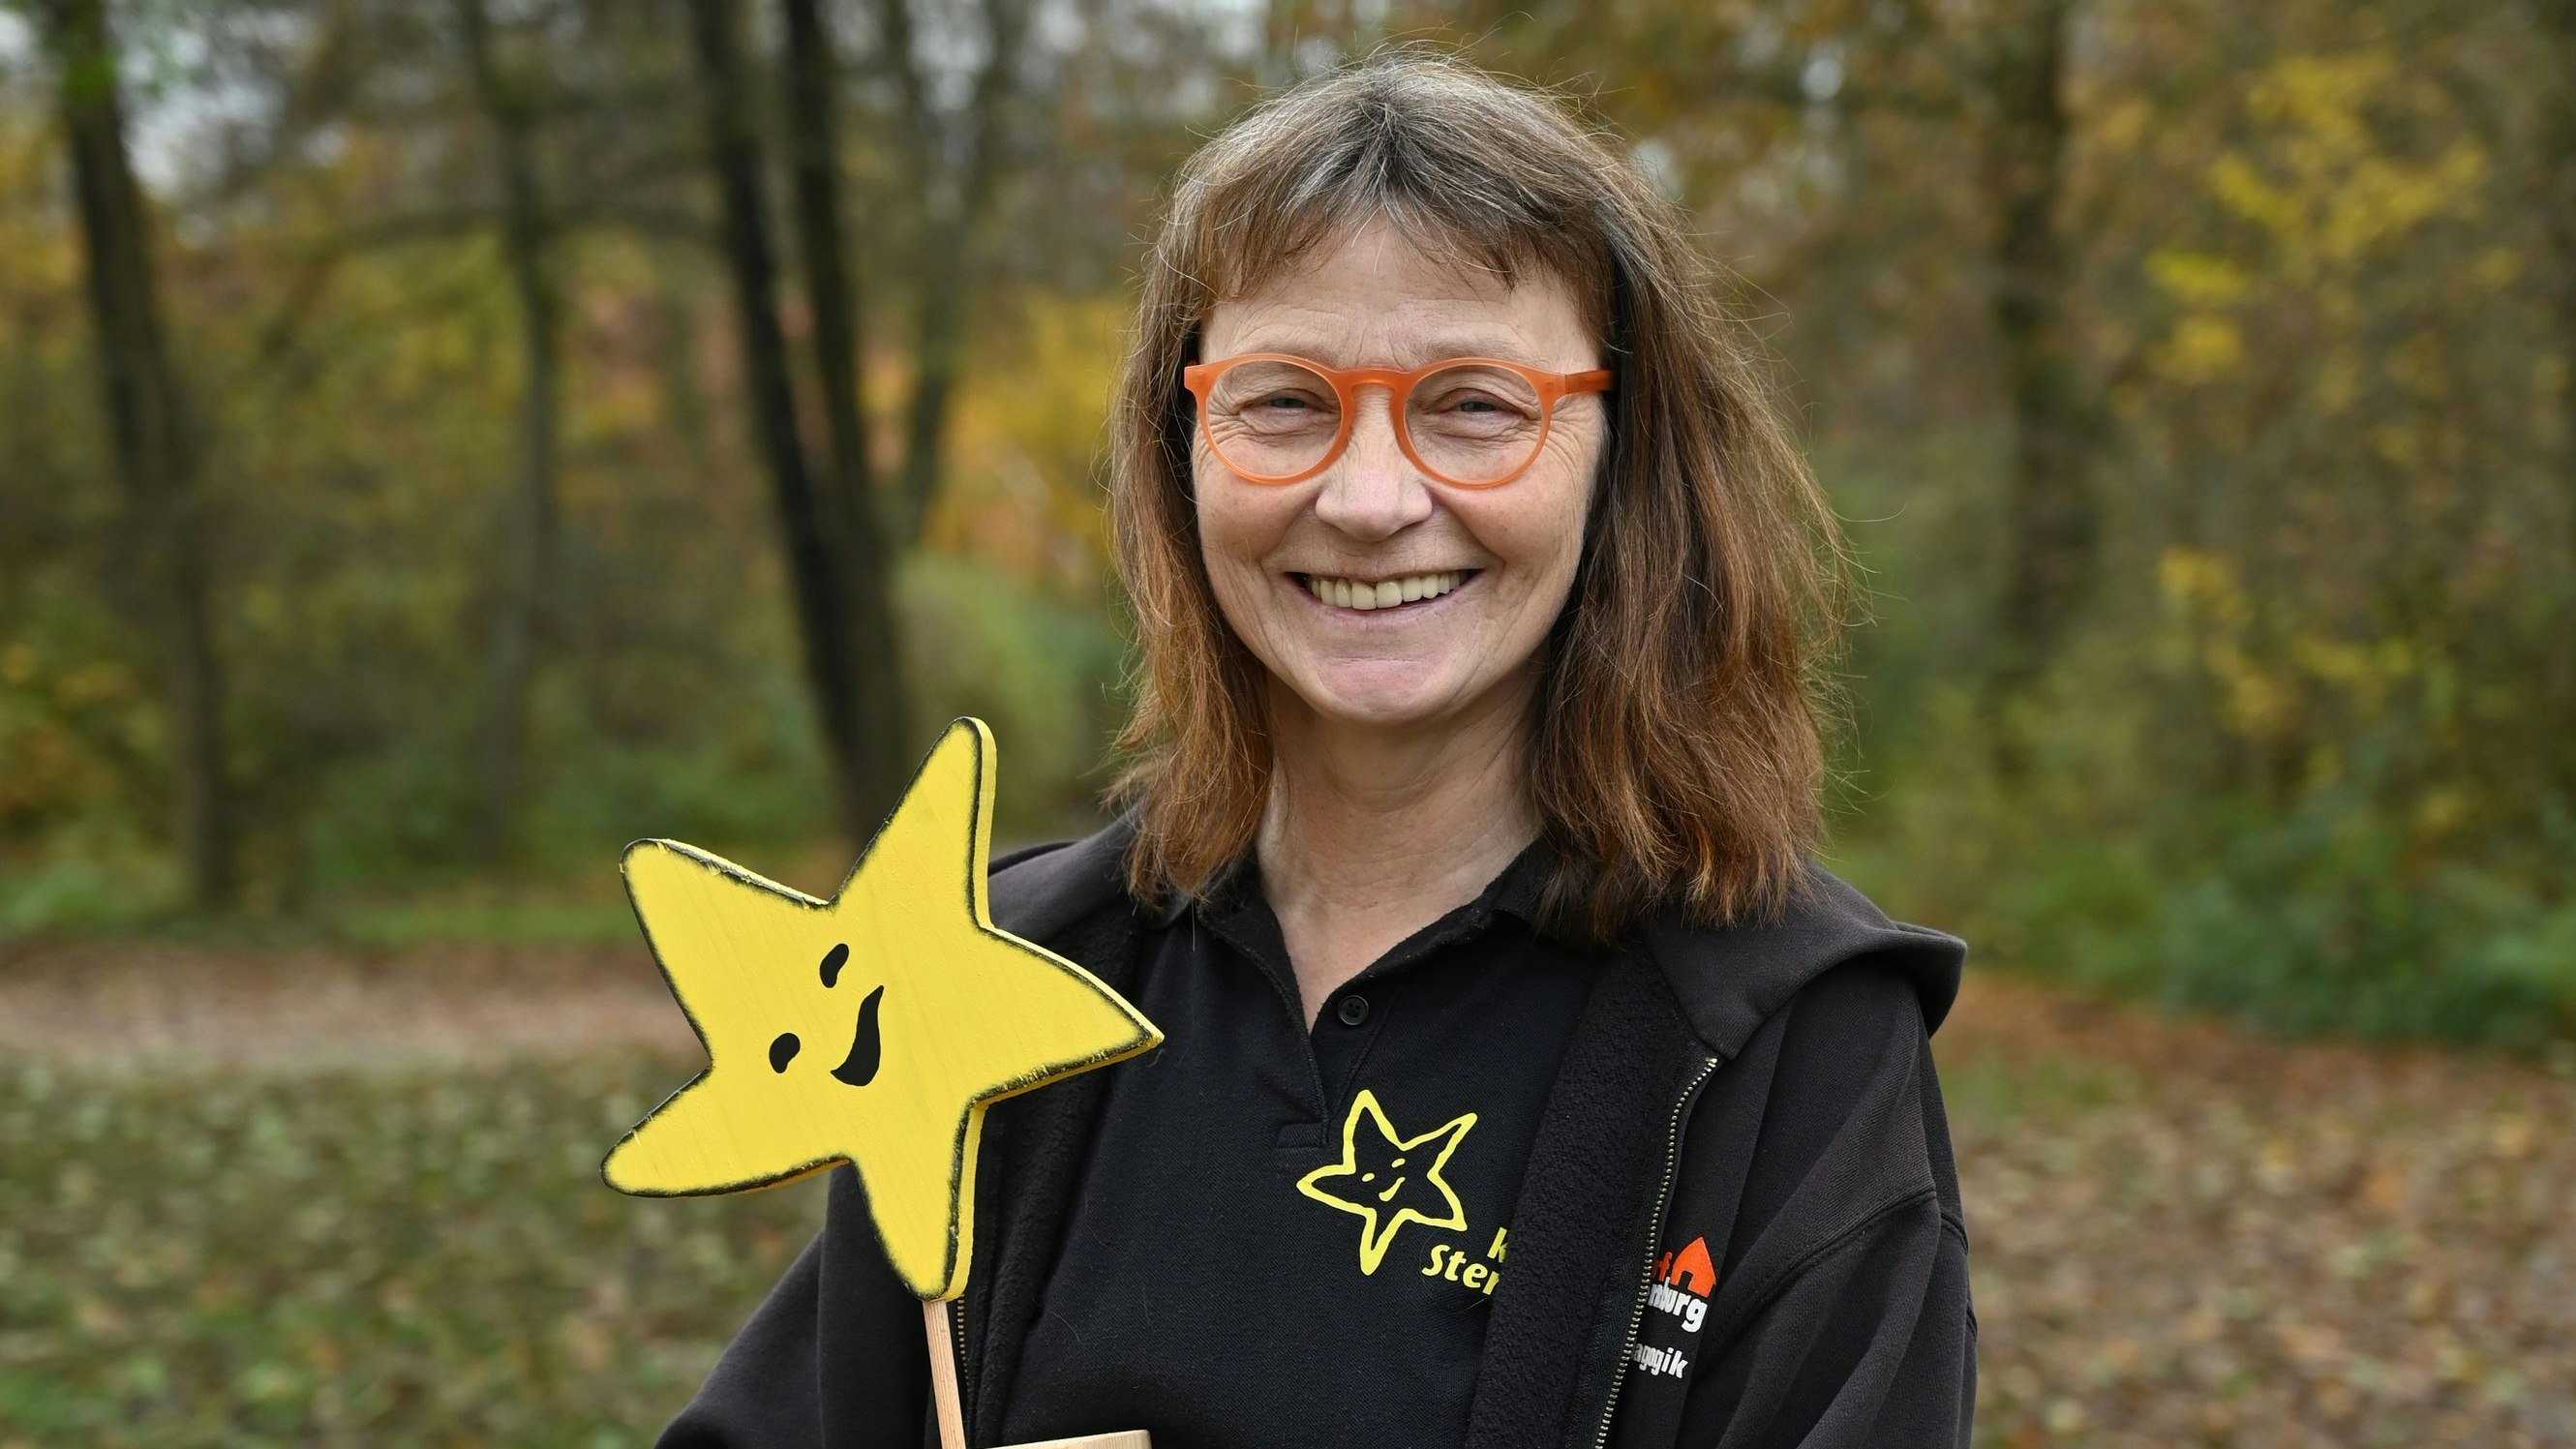 Herzensangelegenheit: Maria Thien ist fest mit der Initiative "Kleiner Stern“ verbunden. Foto: Hermes